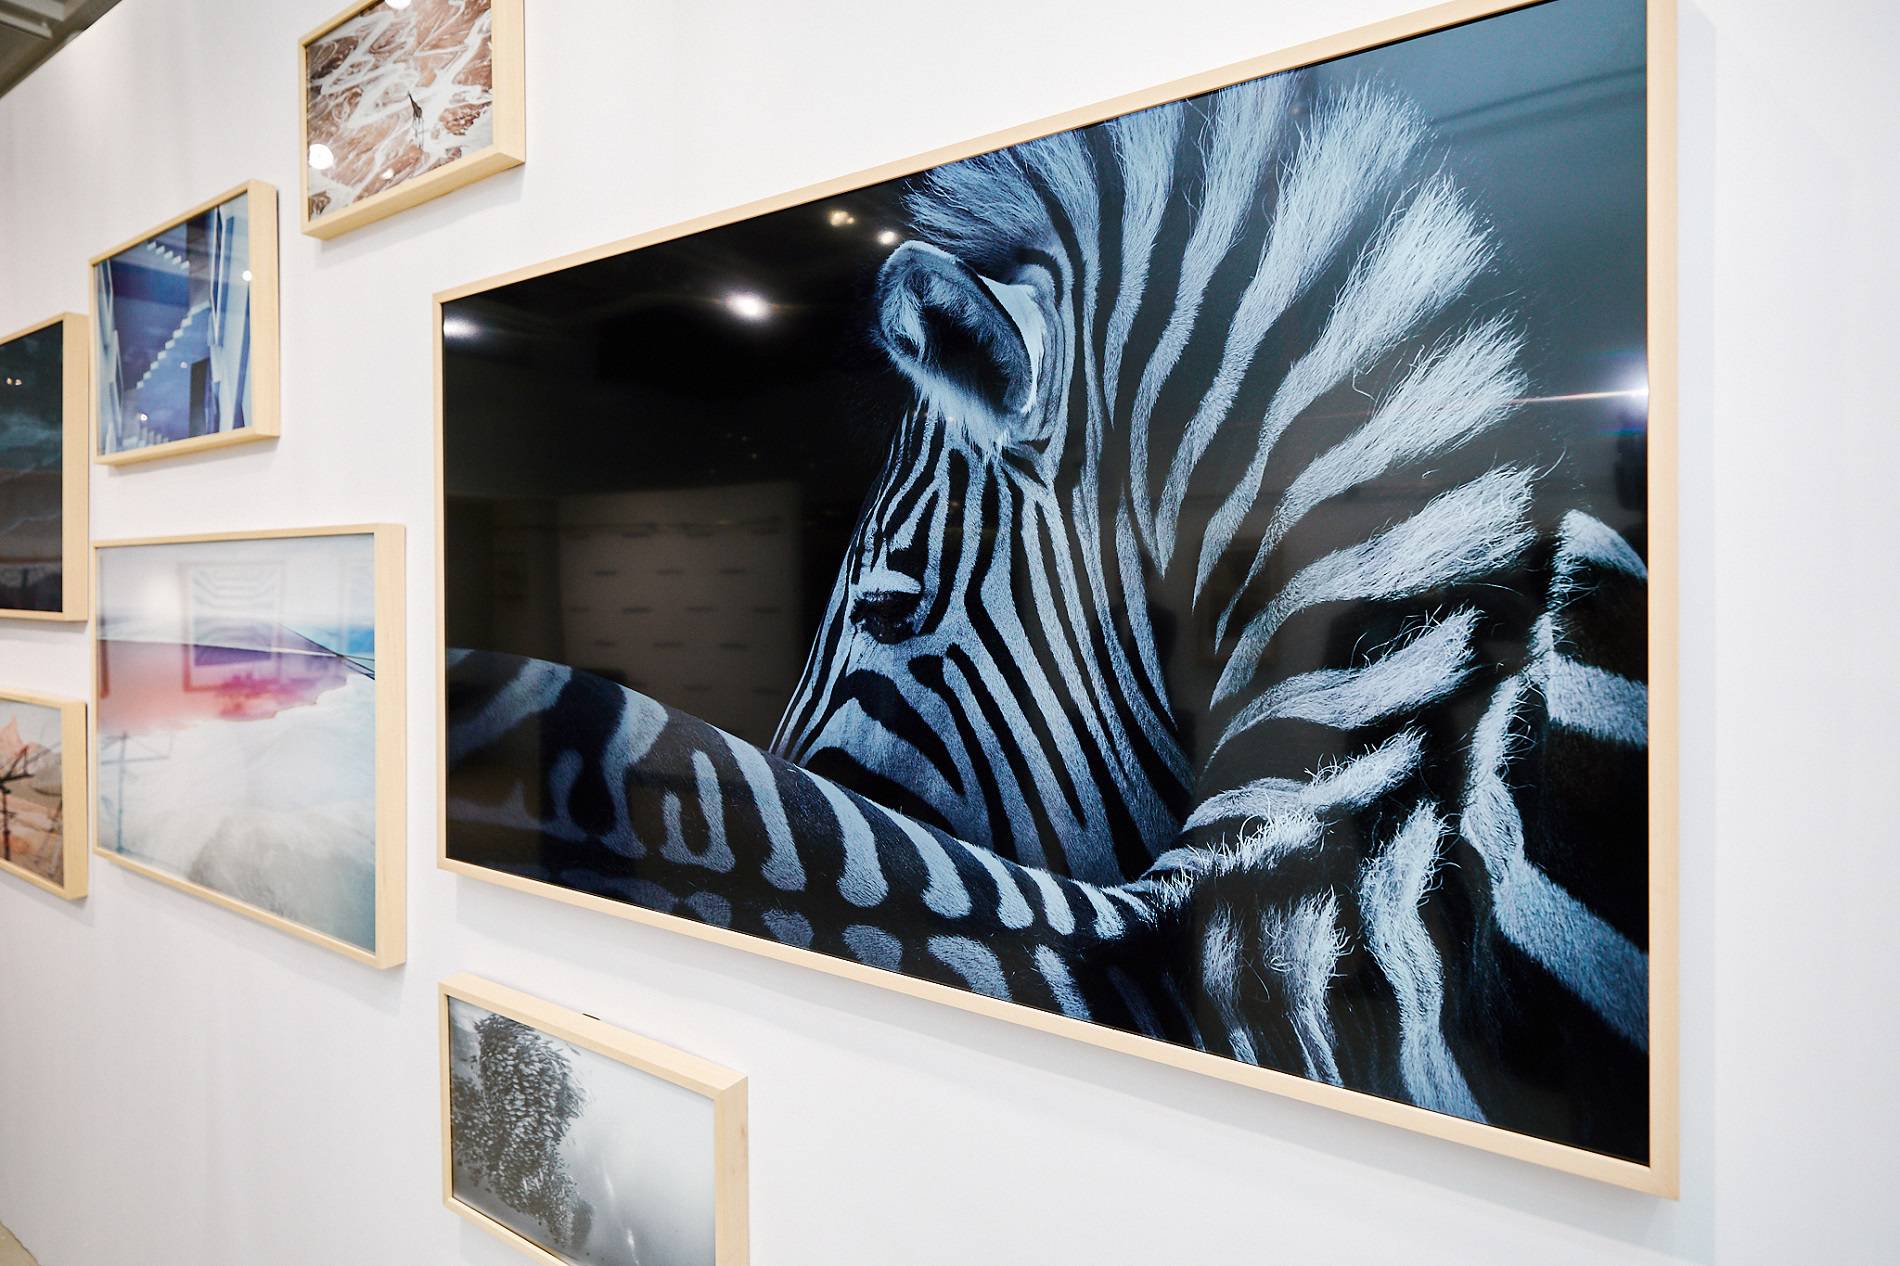 Samsungov Frame pretvorit će vaš dom u umjetničku galeriju